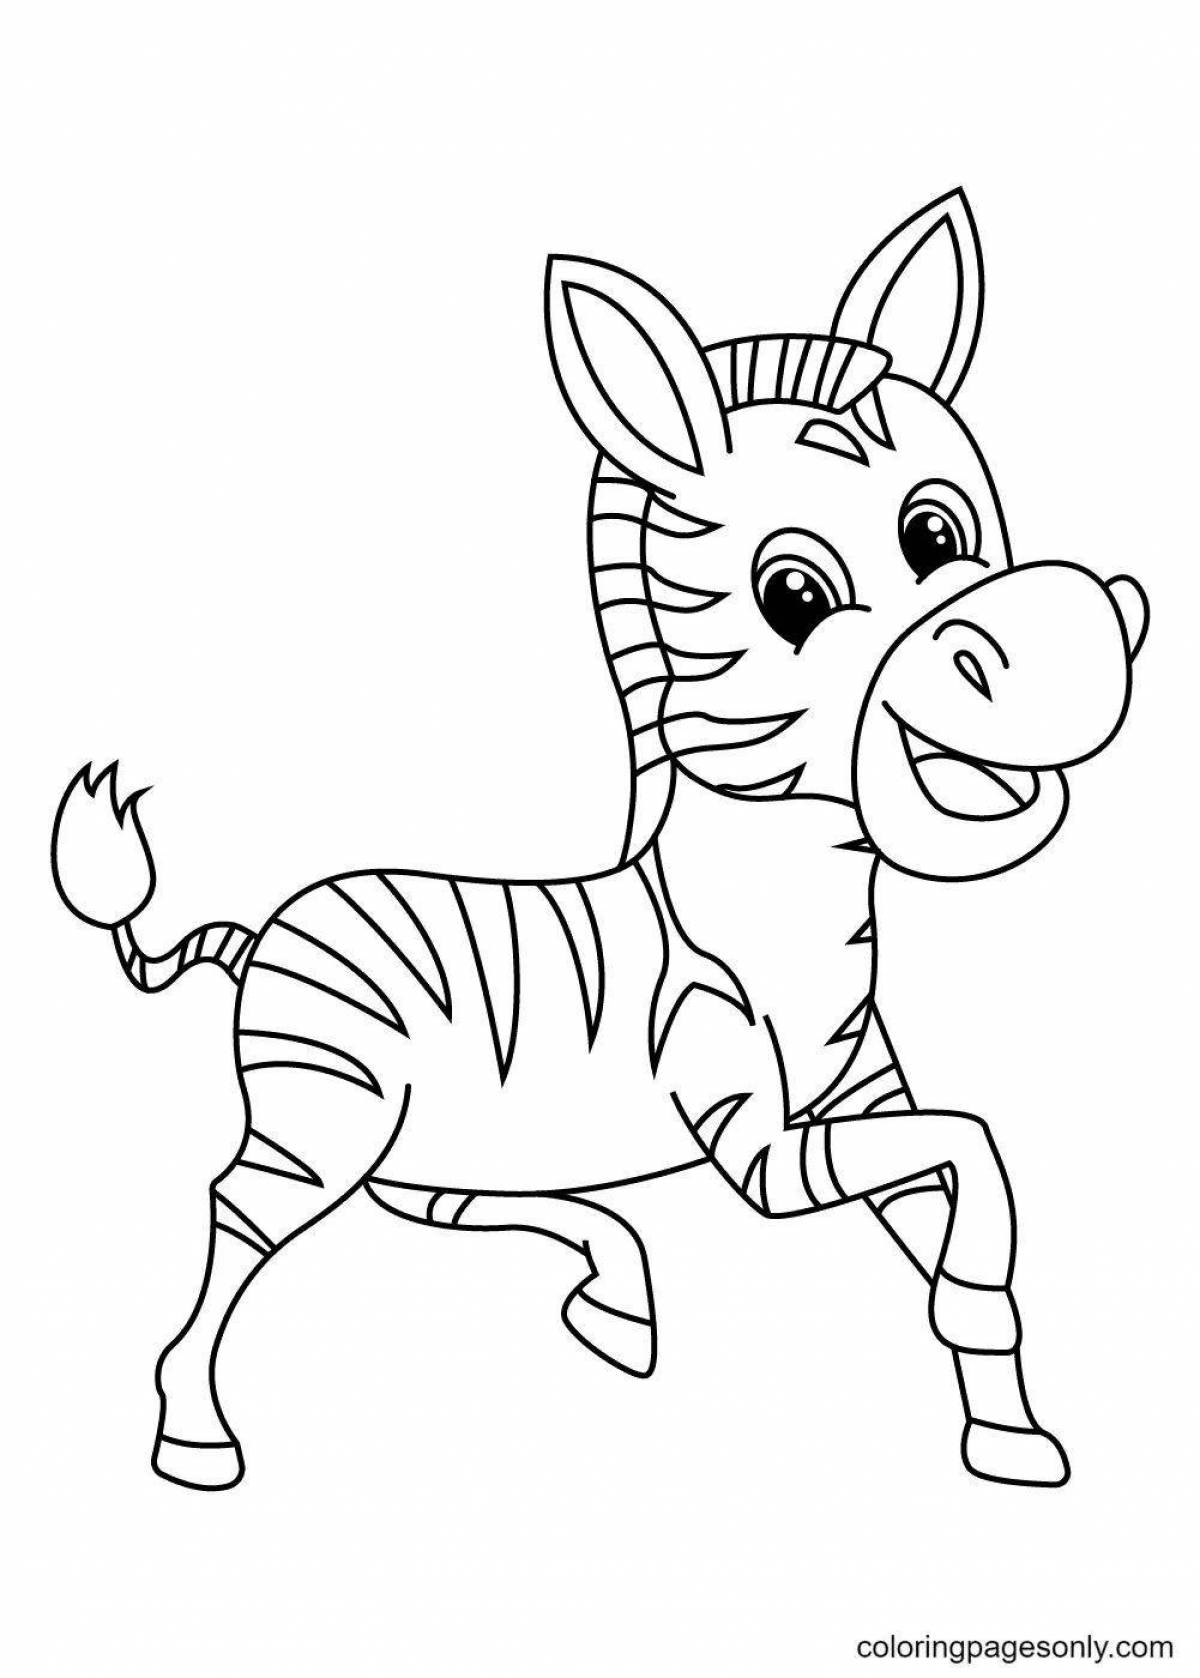 Игривая раскраска зебра для малышей 3-4 лет